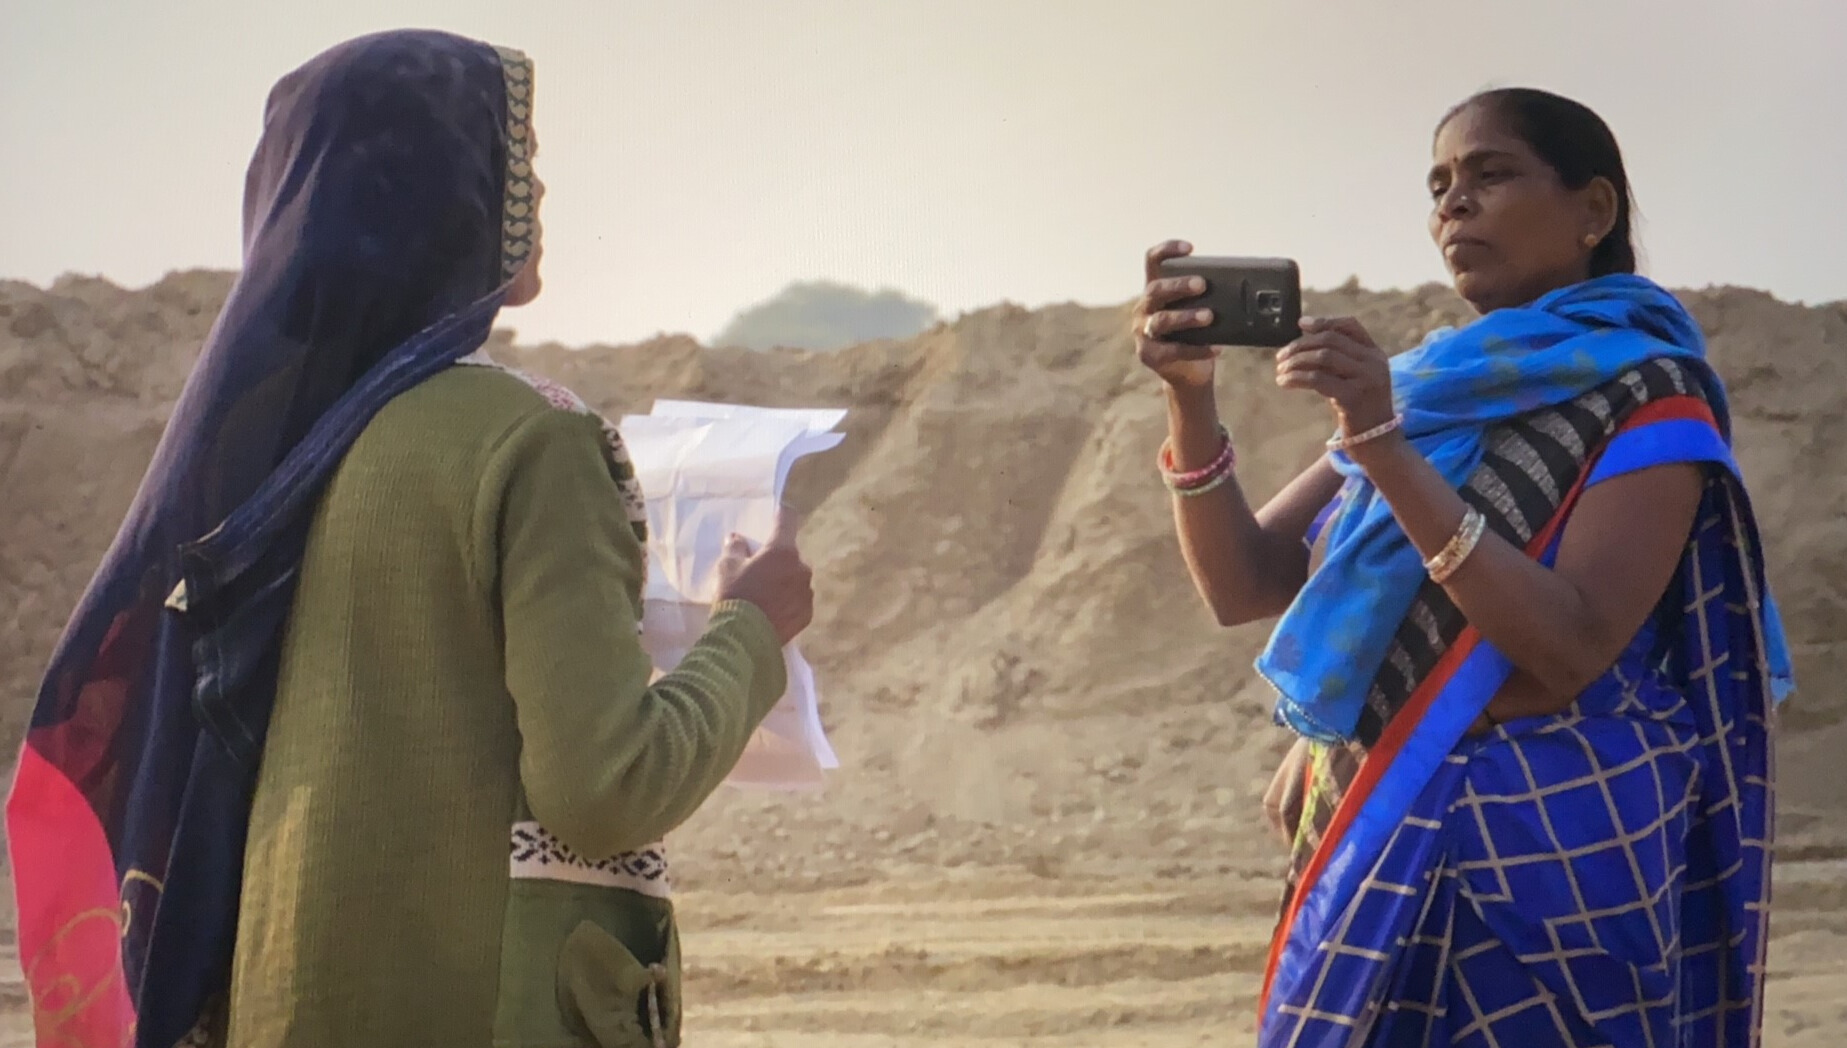 Shiv Devi, reportera sénior de Khabar Lahariya, en el pueblo de Amara viinformando sobre un accidente minero en 2020. ©Uttar Pradesh Banda